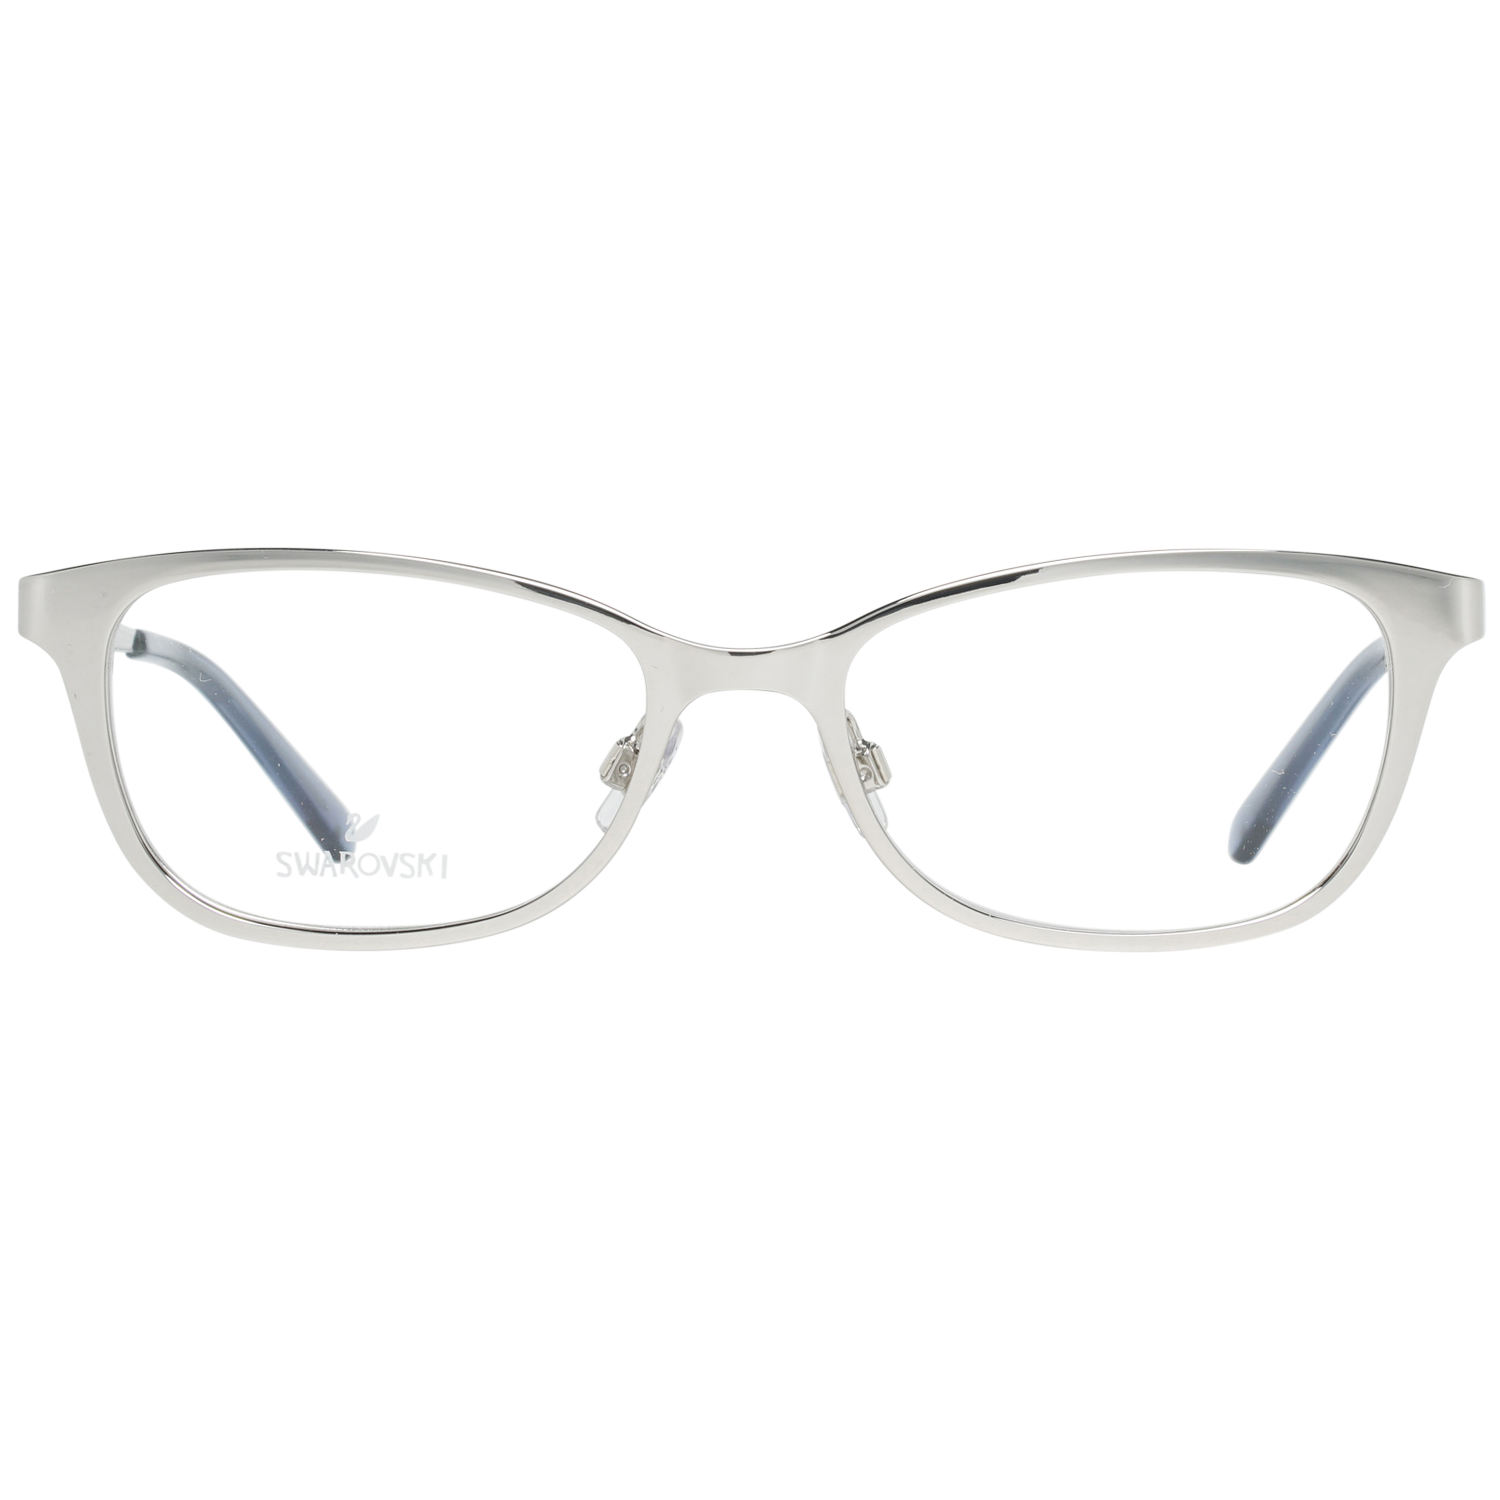 Swarovski Frames Swarovski Women Glasses Optical Frame SK5277 016 52 Eyeglasses Eyewear UK USA Australia 